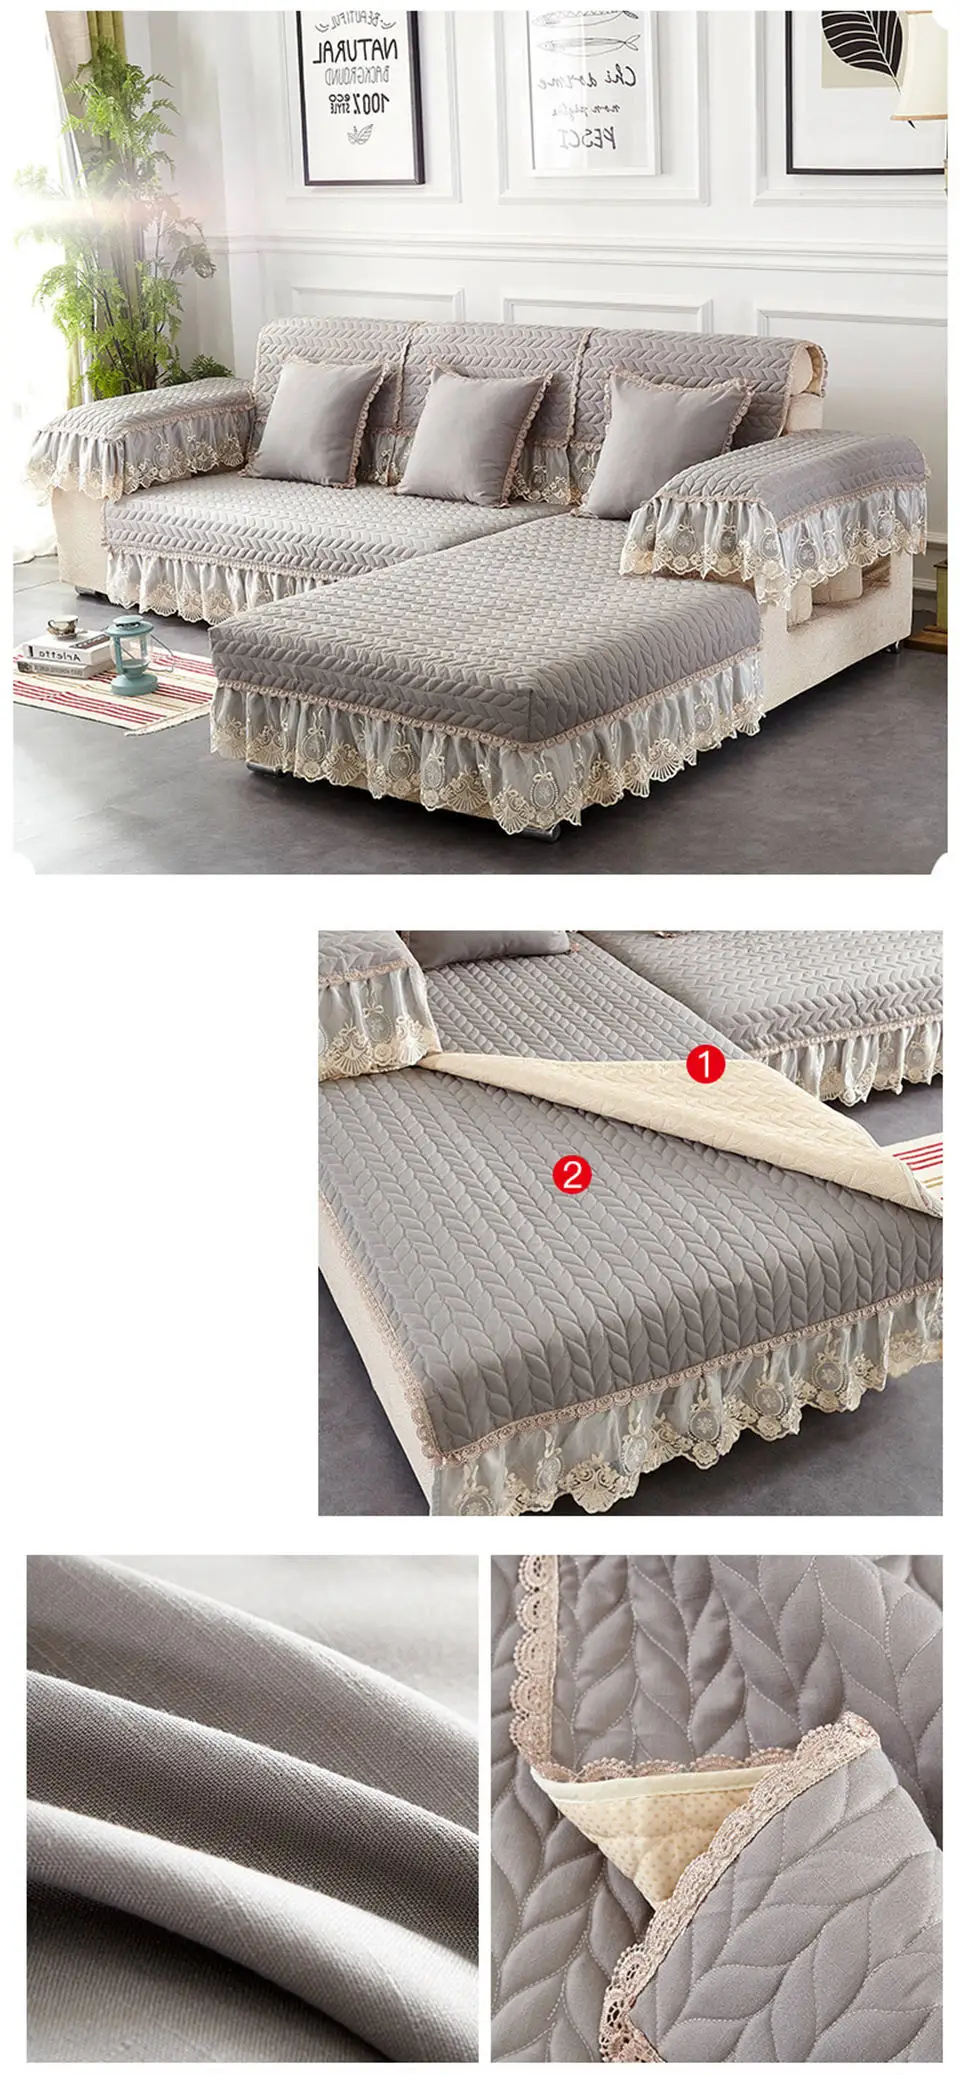 Lowdream Европейская ткань противоскользящее кружево предотвращает загрязнения чехлы для диванов стиль наволочки 4 цвета различных размеров скандинавские диванные подушки